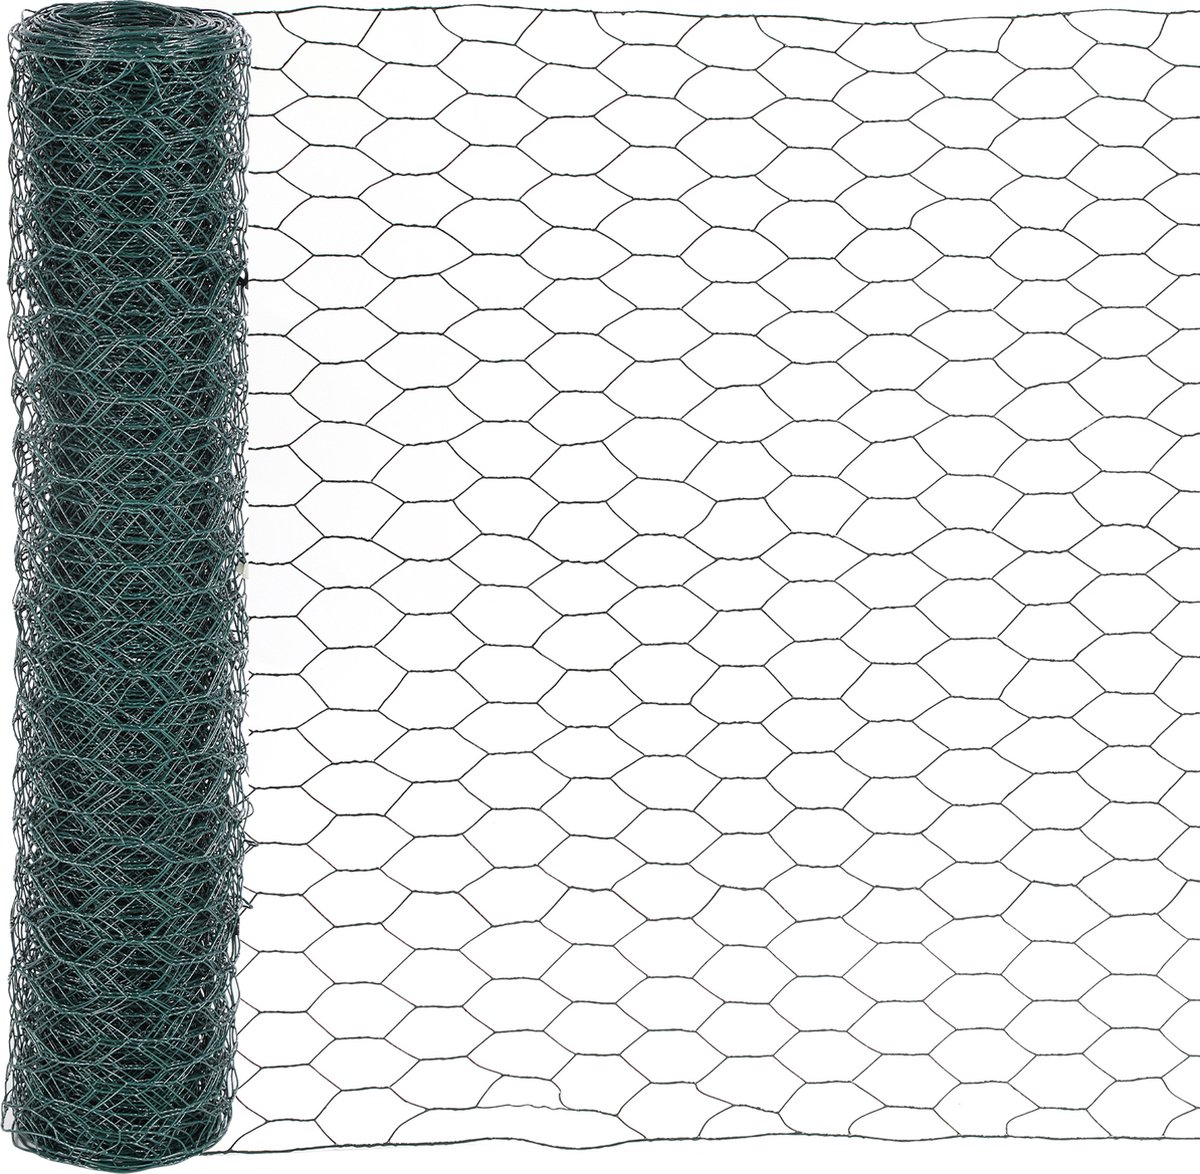 Kippengaas - 100cm x 10m - Schermgaas - Kippengaas zeshoekig - Maaswijdte 27mm - verzinkt staal - zeskantig maaswijdte - Multifunctioneel - Groen - Merkloos